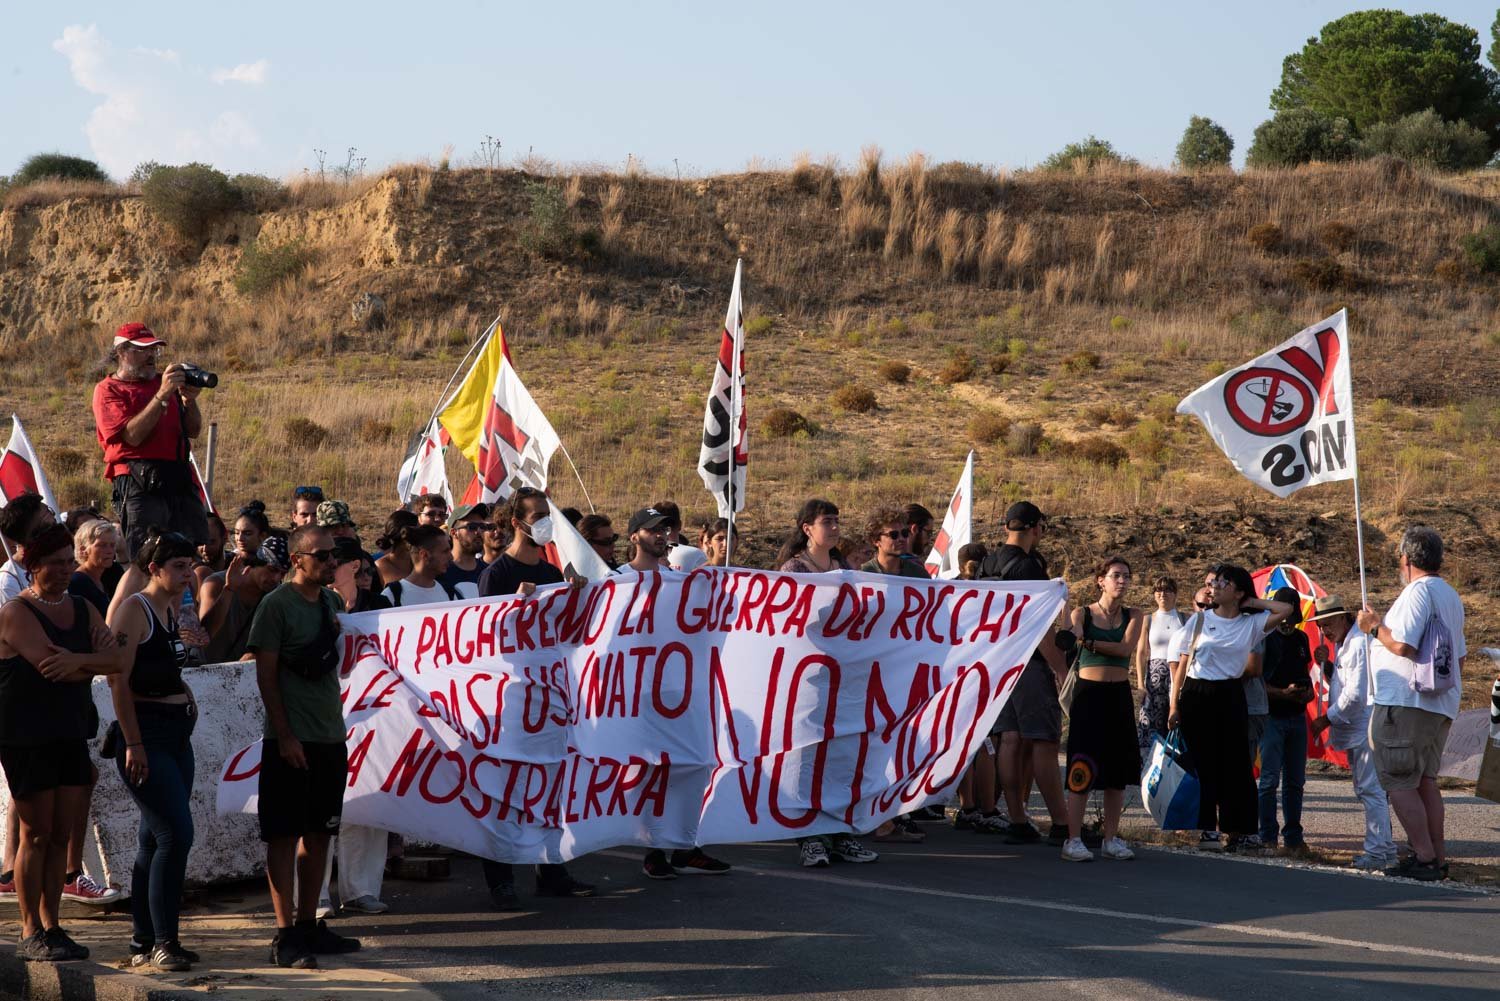  Manifestazione NoMuos davanti alla base militare. Il movimento si definisce ambientalista e       antimilitarista. Niscemi (Caltanissetta), agosto 2022 